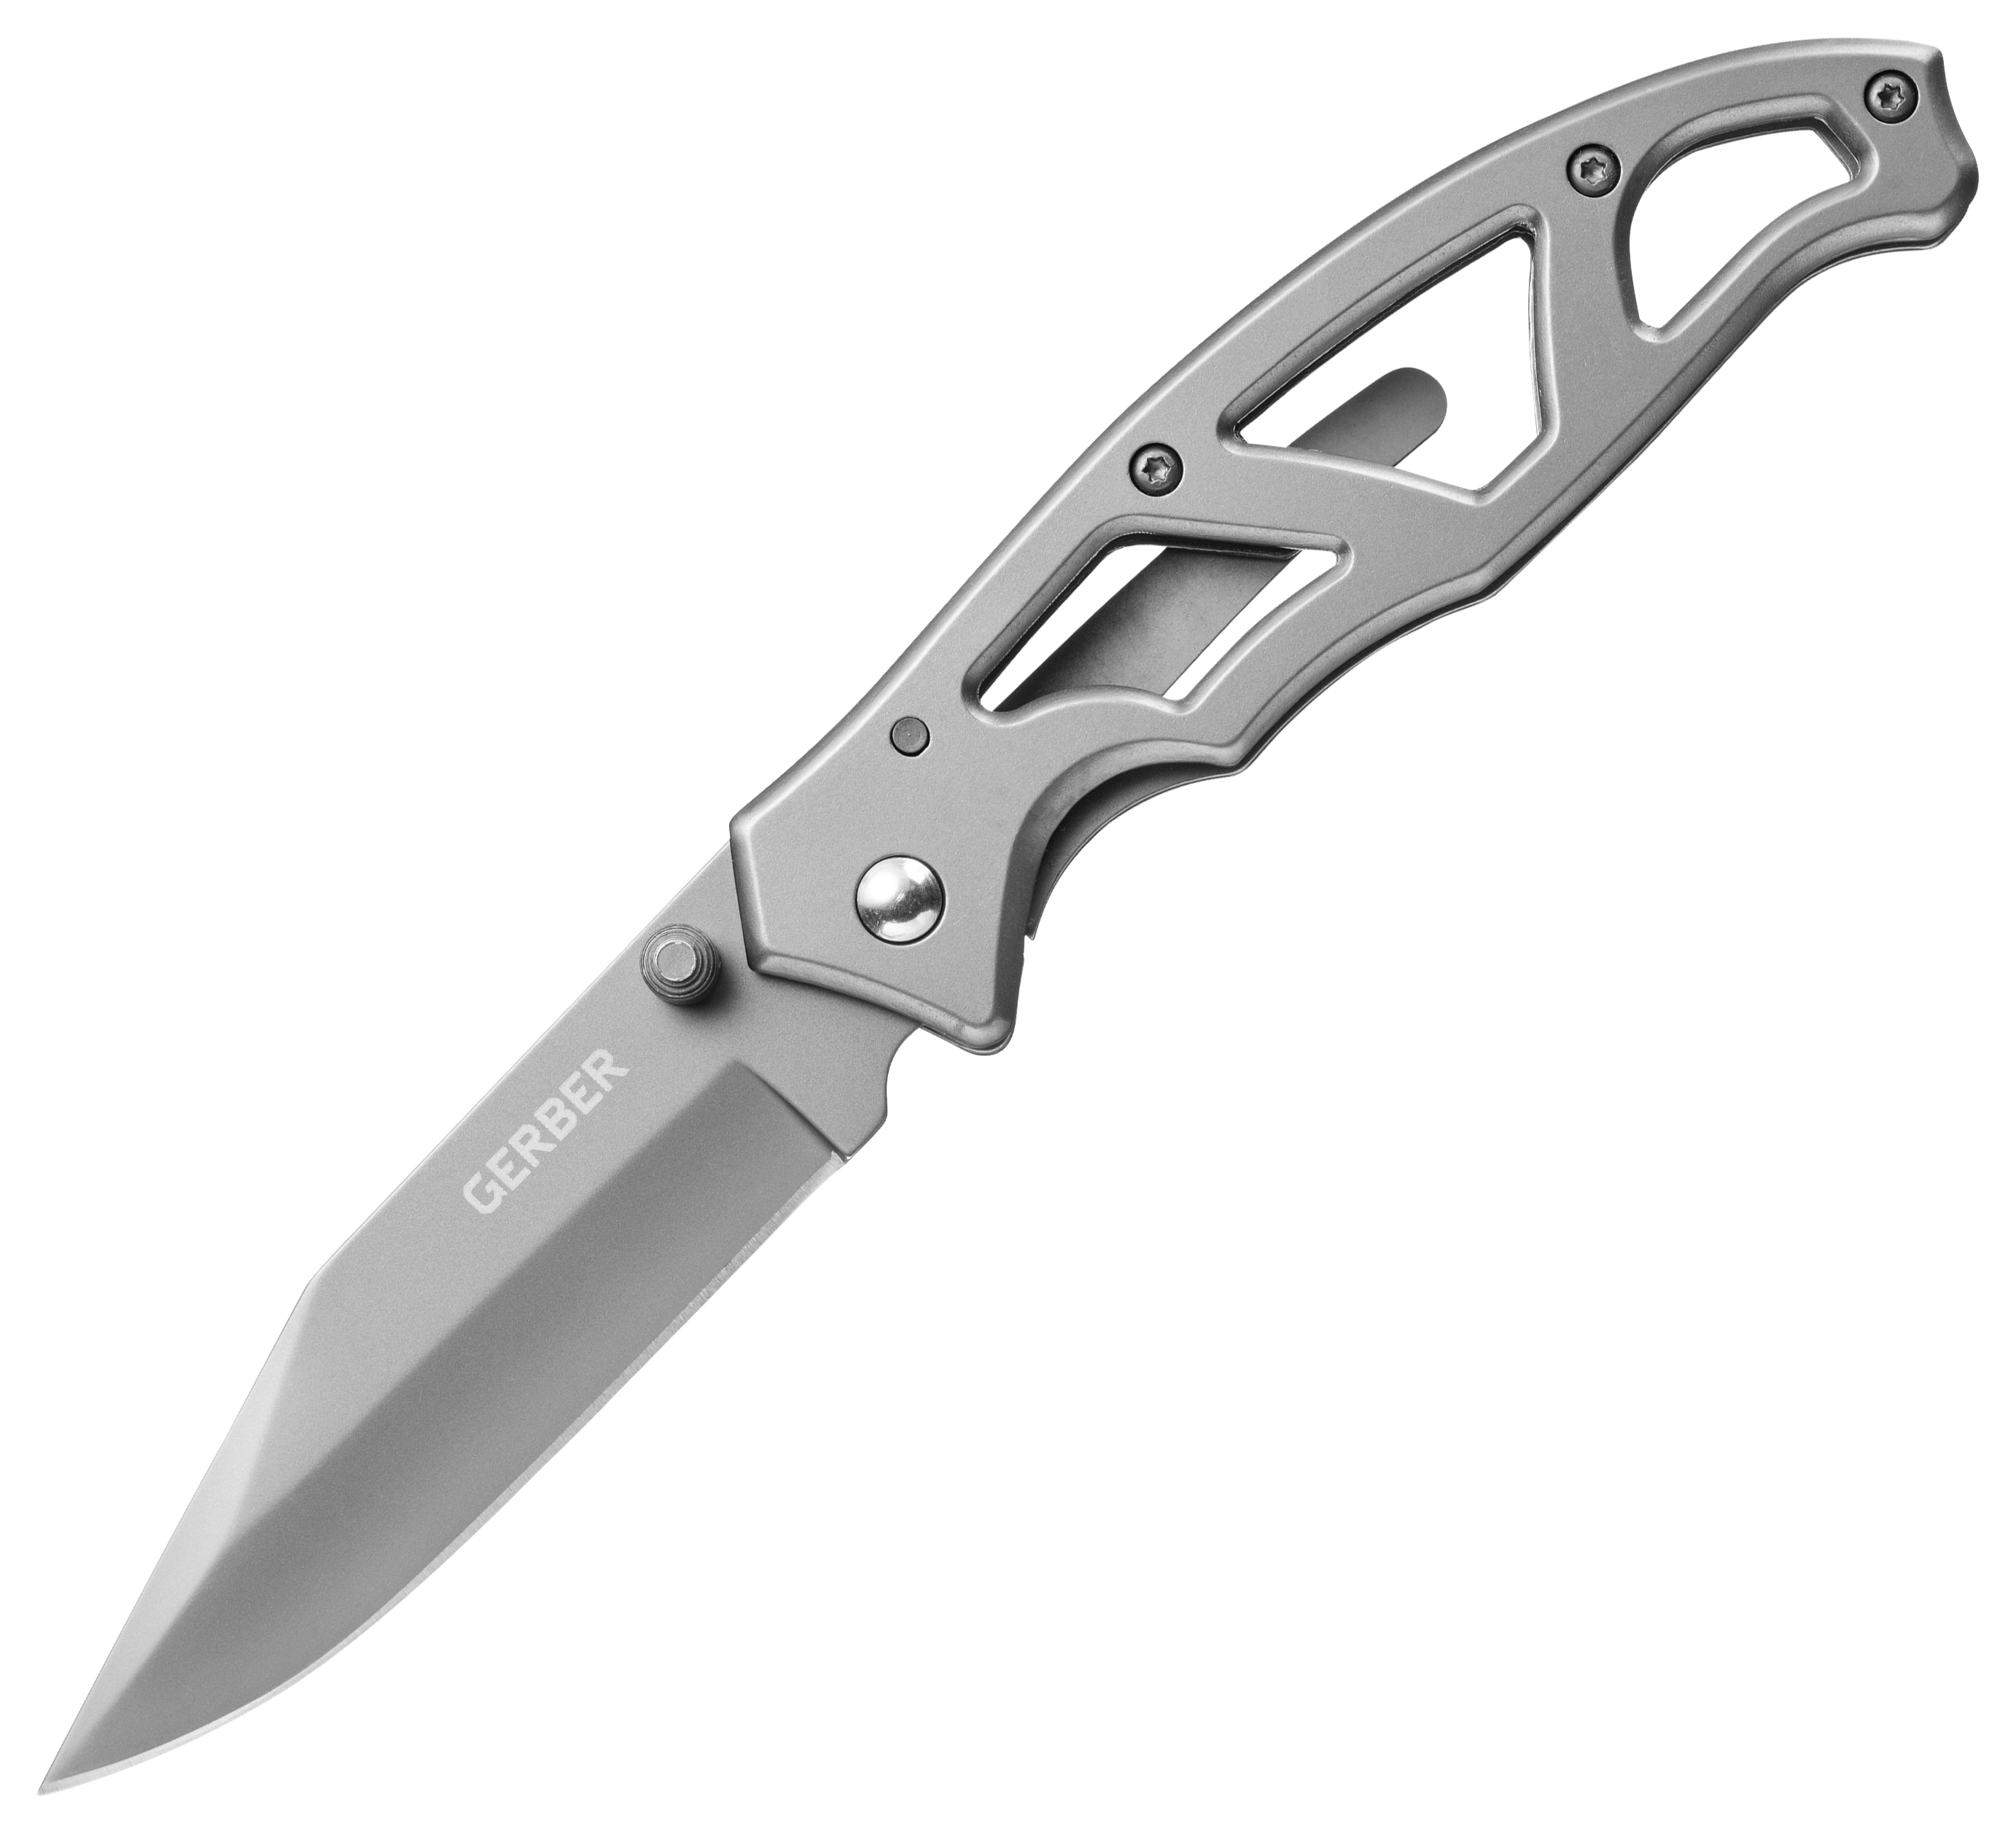 Gerber Paraframe I Folding Knife in Ti-Grey